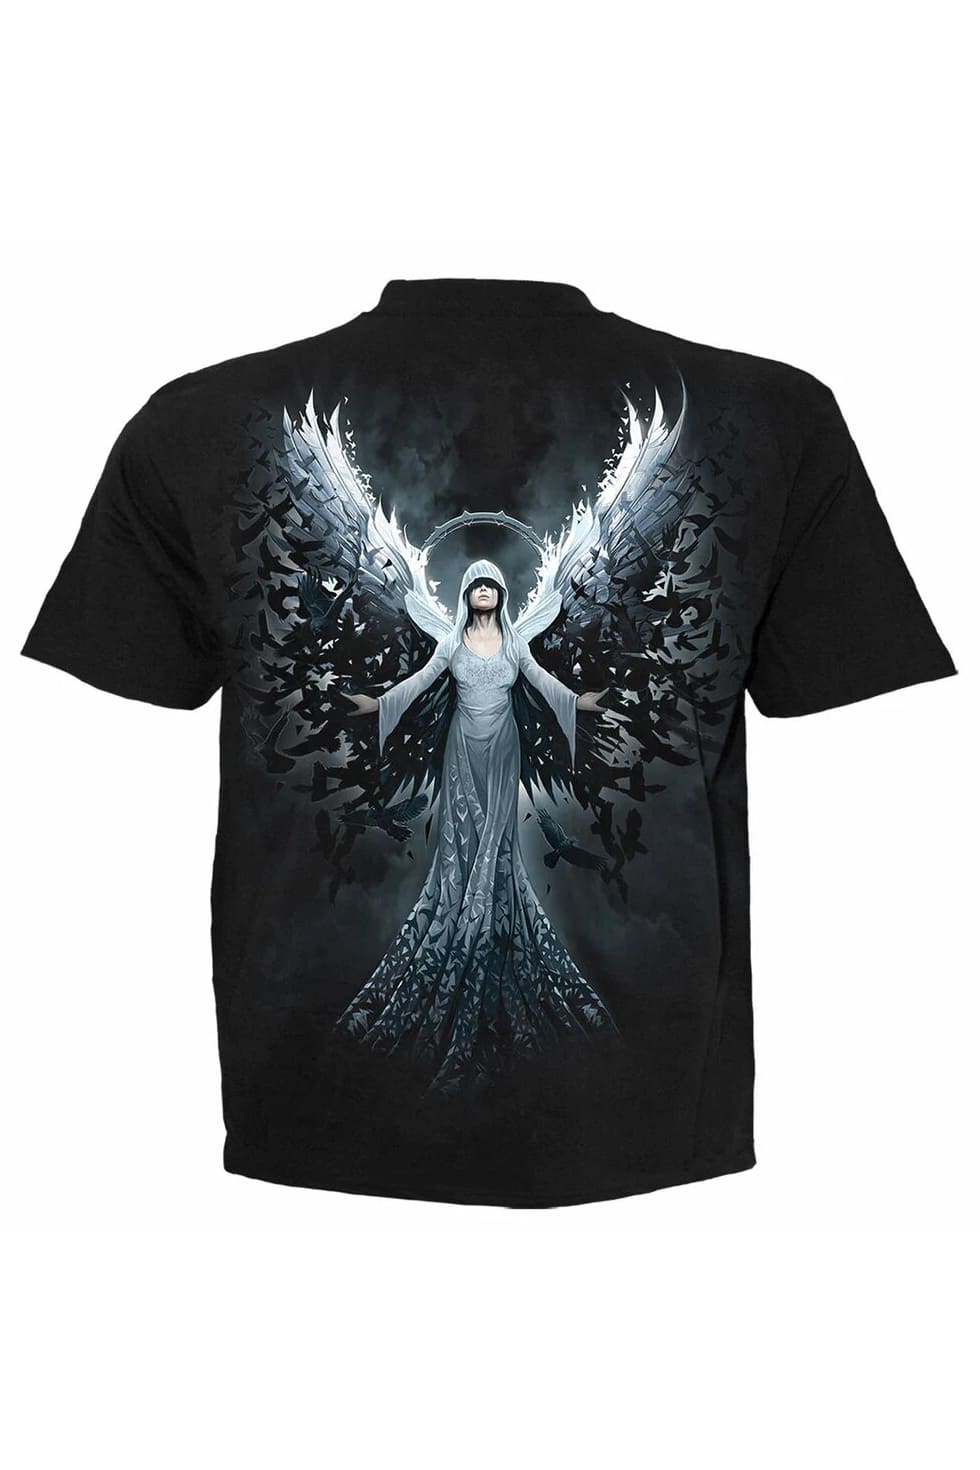 Мужская футболка в стиле рок ETHEREAL ANGEL, 3